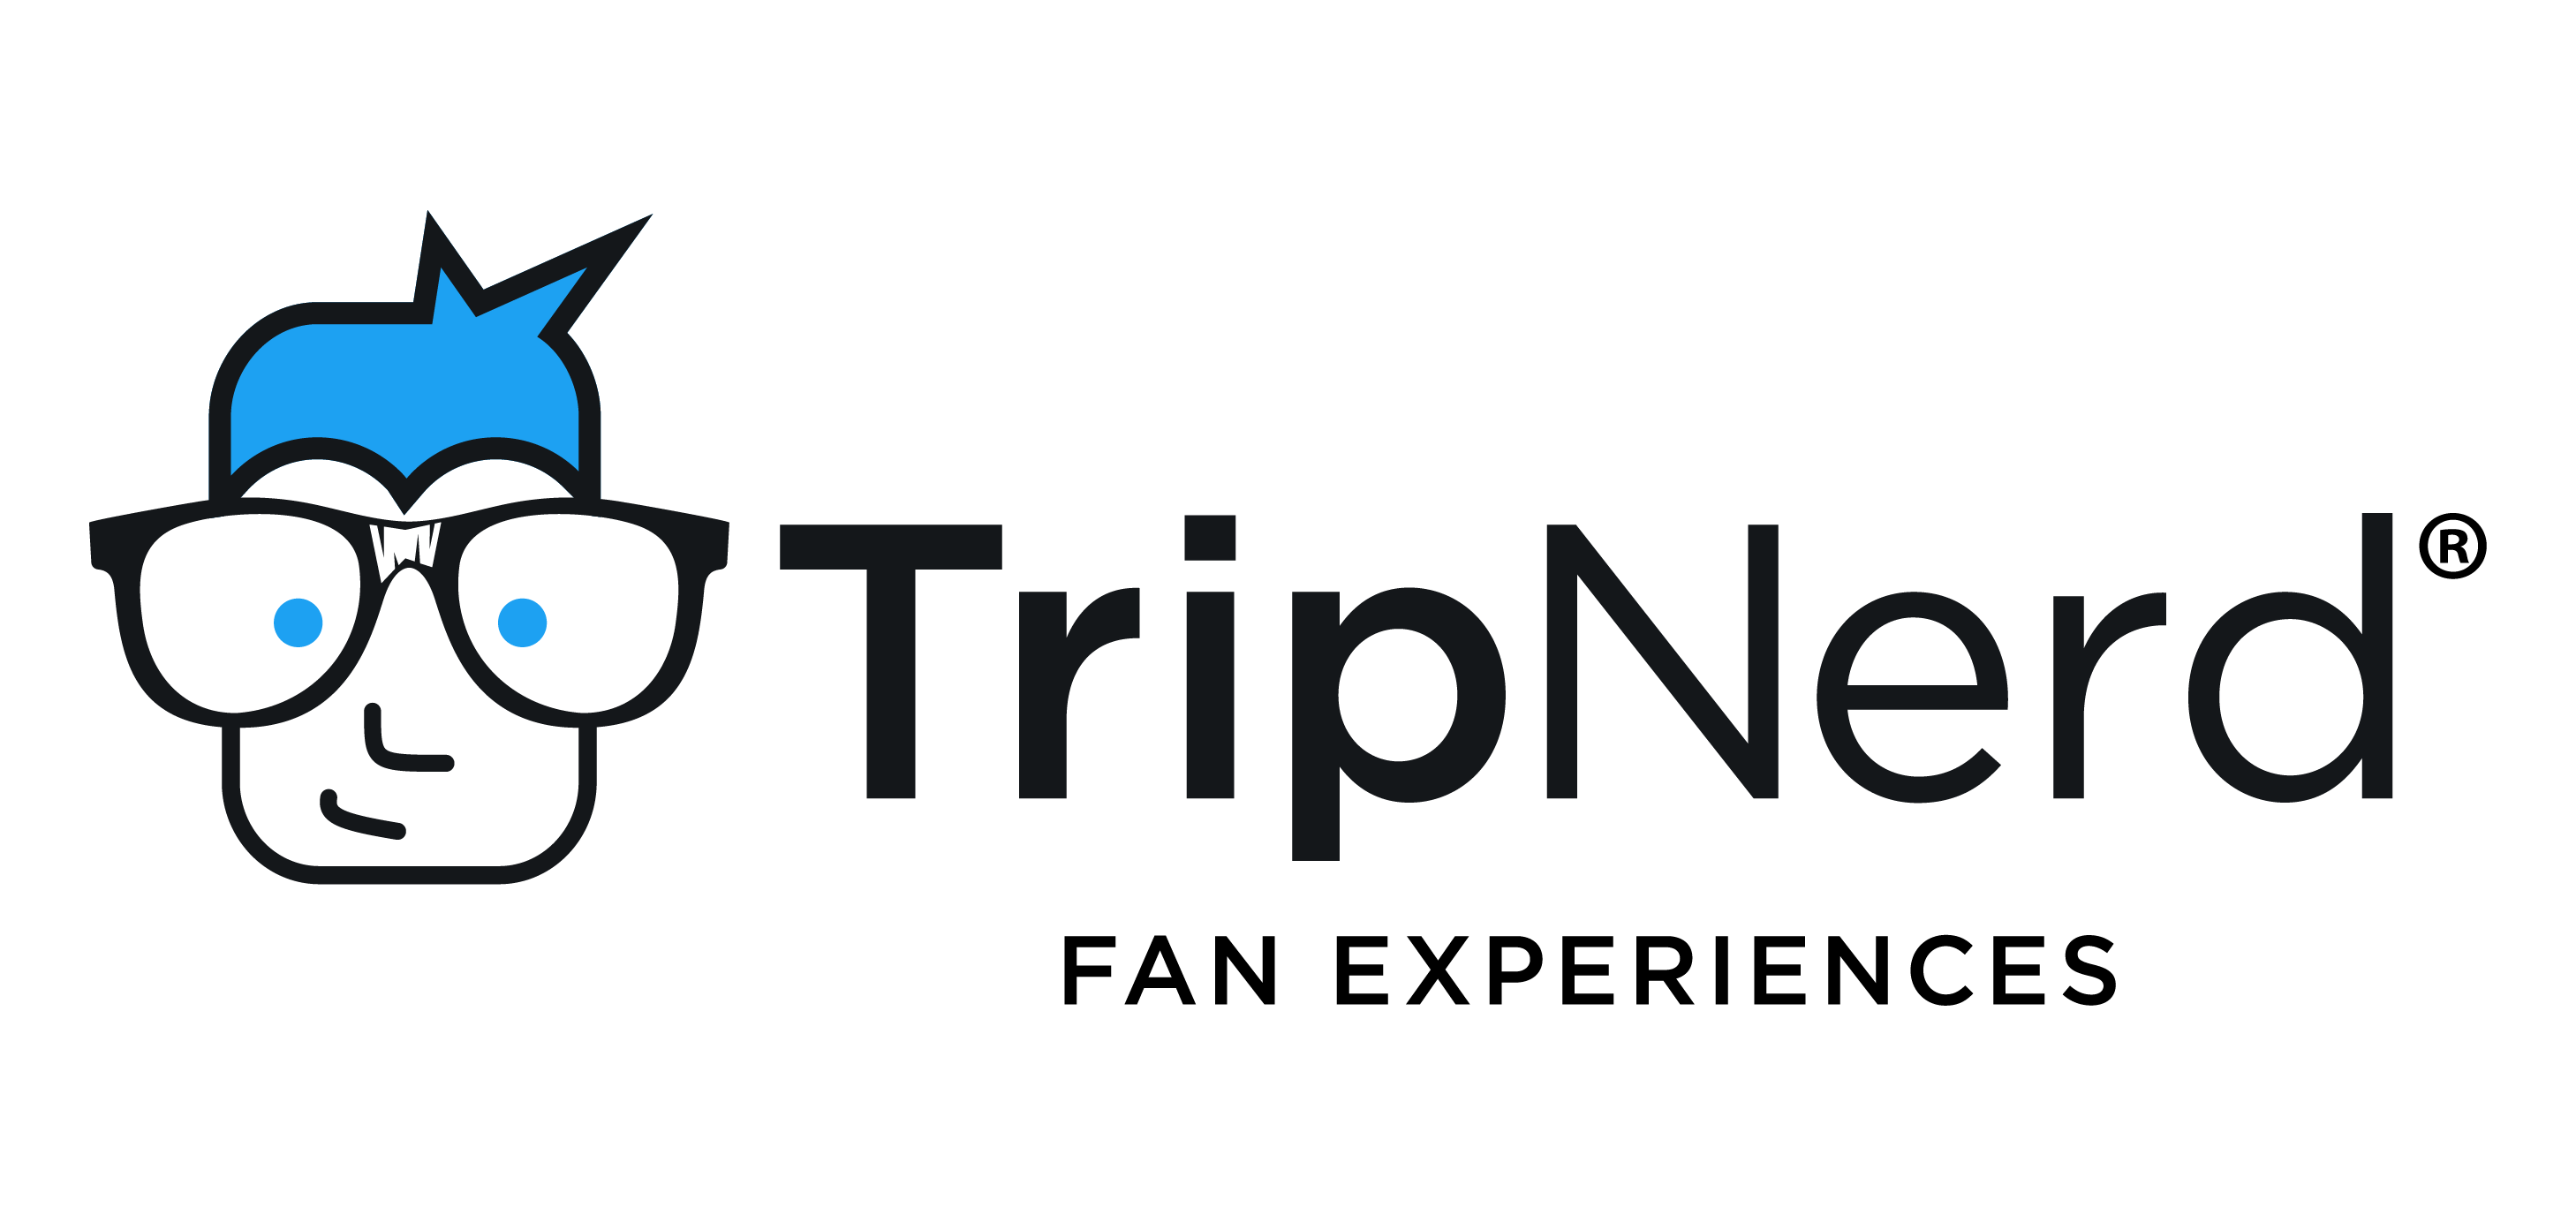 N.E.r.d Logo - TripNerd. Ultimate Fan Experiences